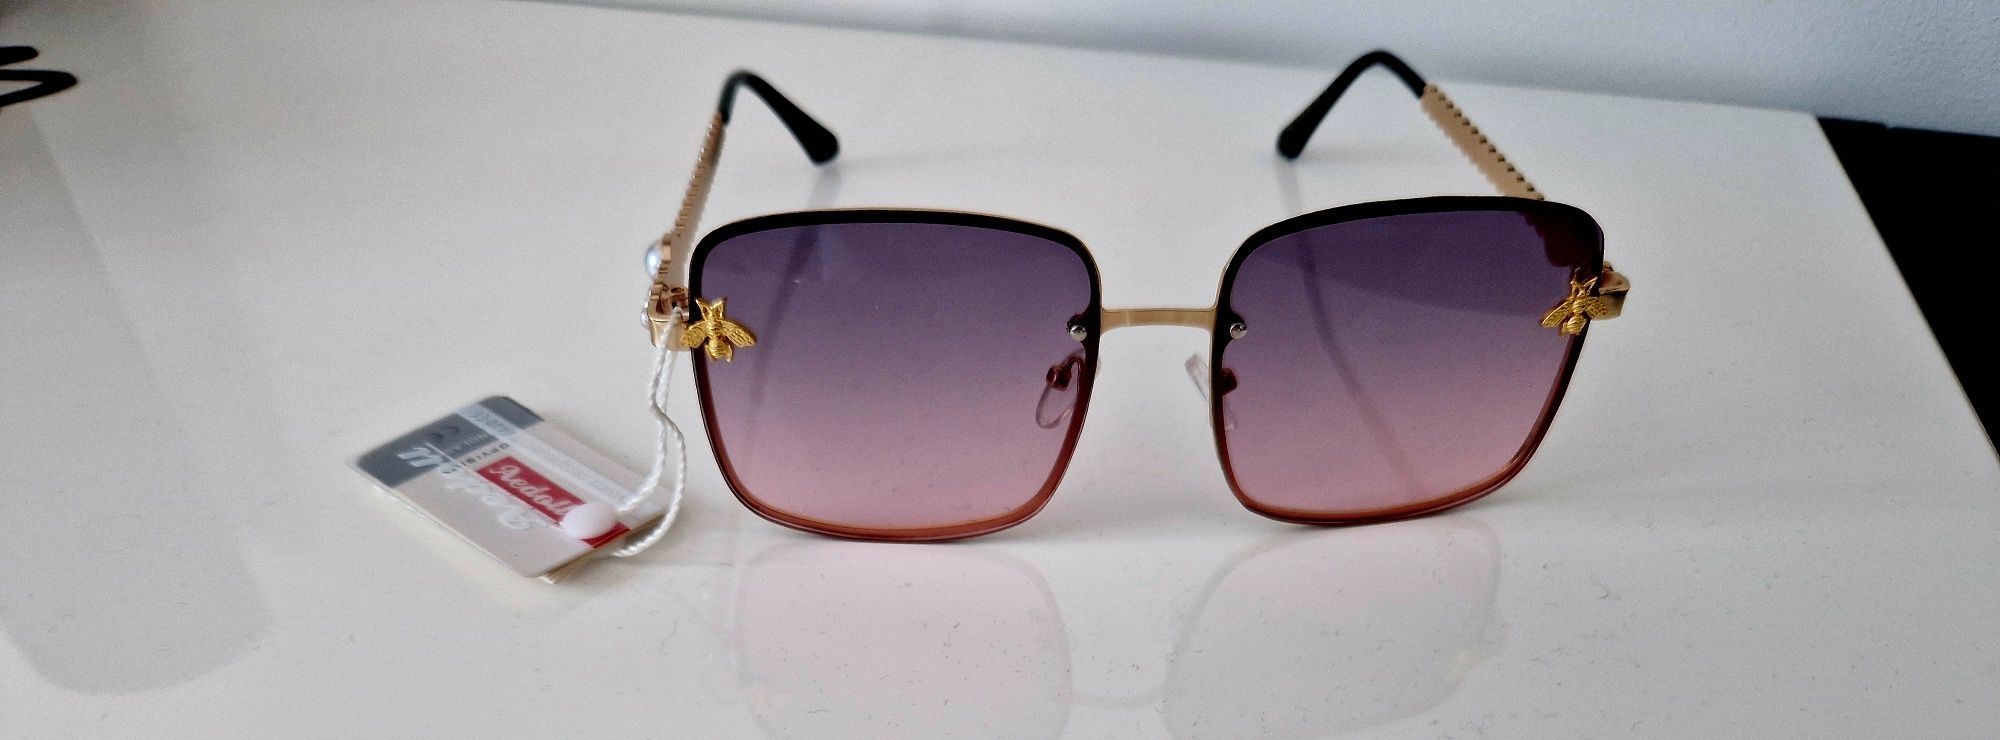 Okulary przeciwsłoneczne damskie z muchą NOWE